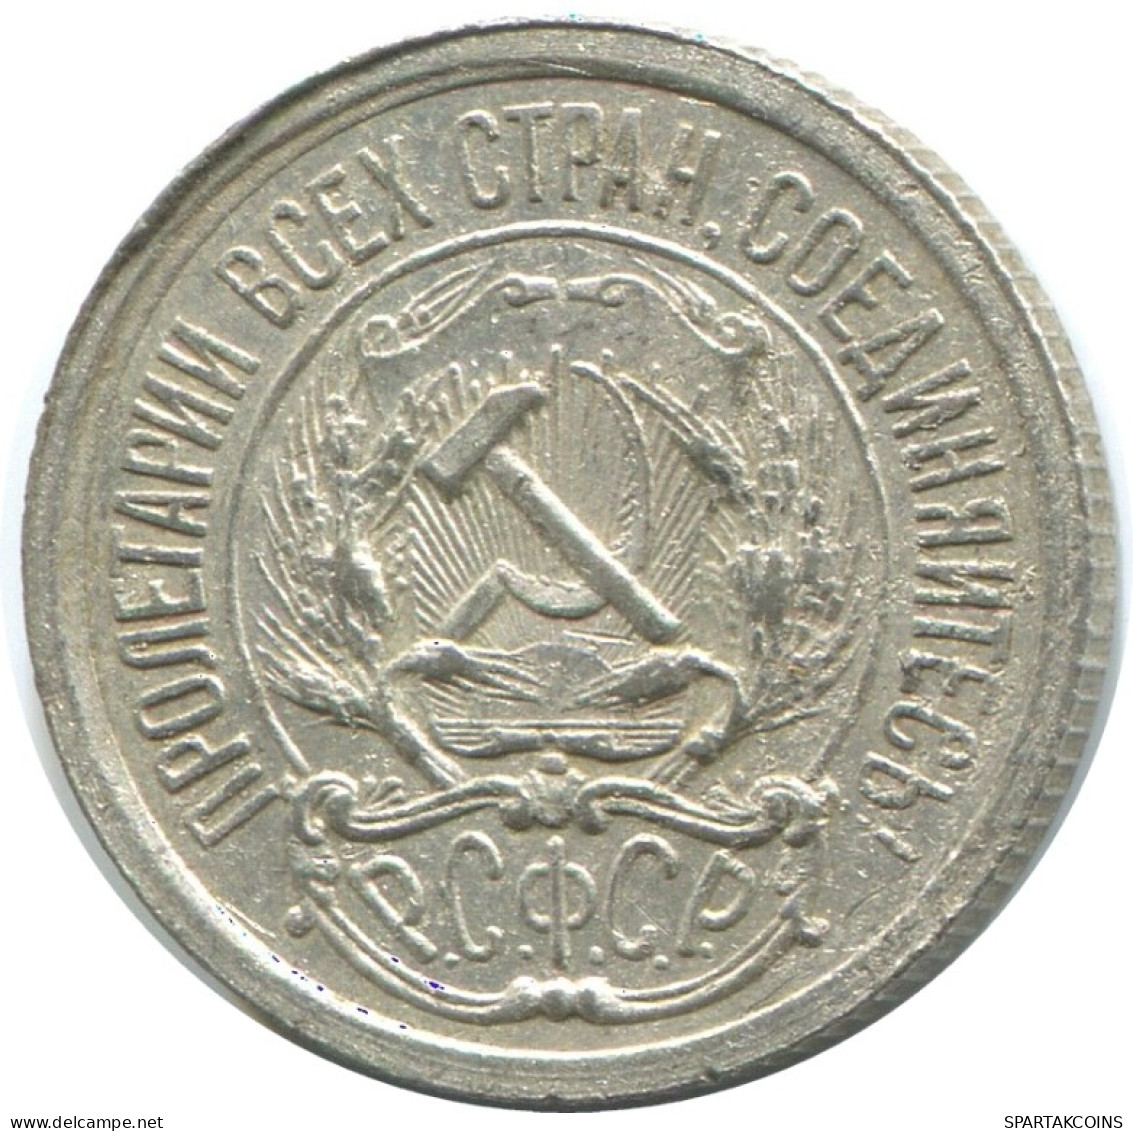 10 KOPEKS 1923 RUSSLAND RUSSIA RSFSR SILBER Münze HIGH GRADE #AE941.4.D.A - Russia